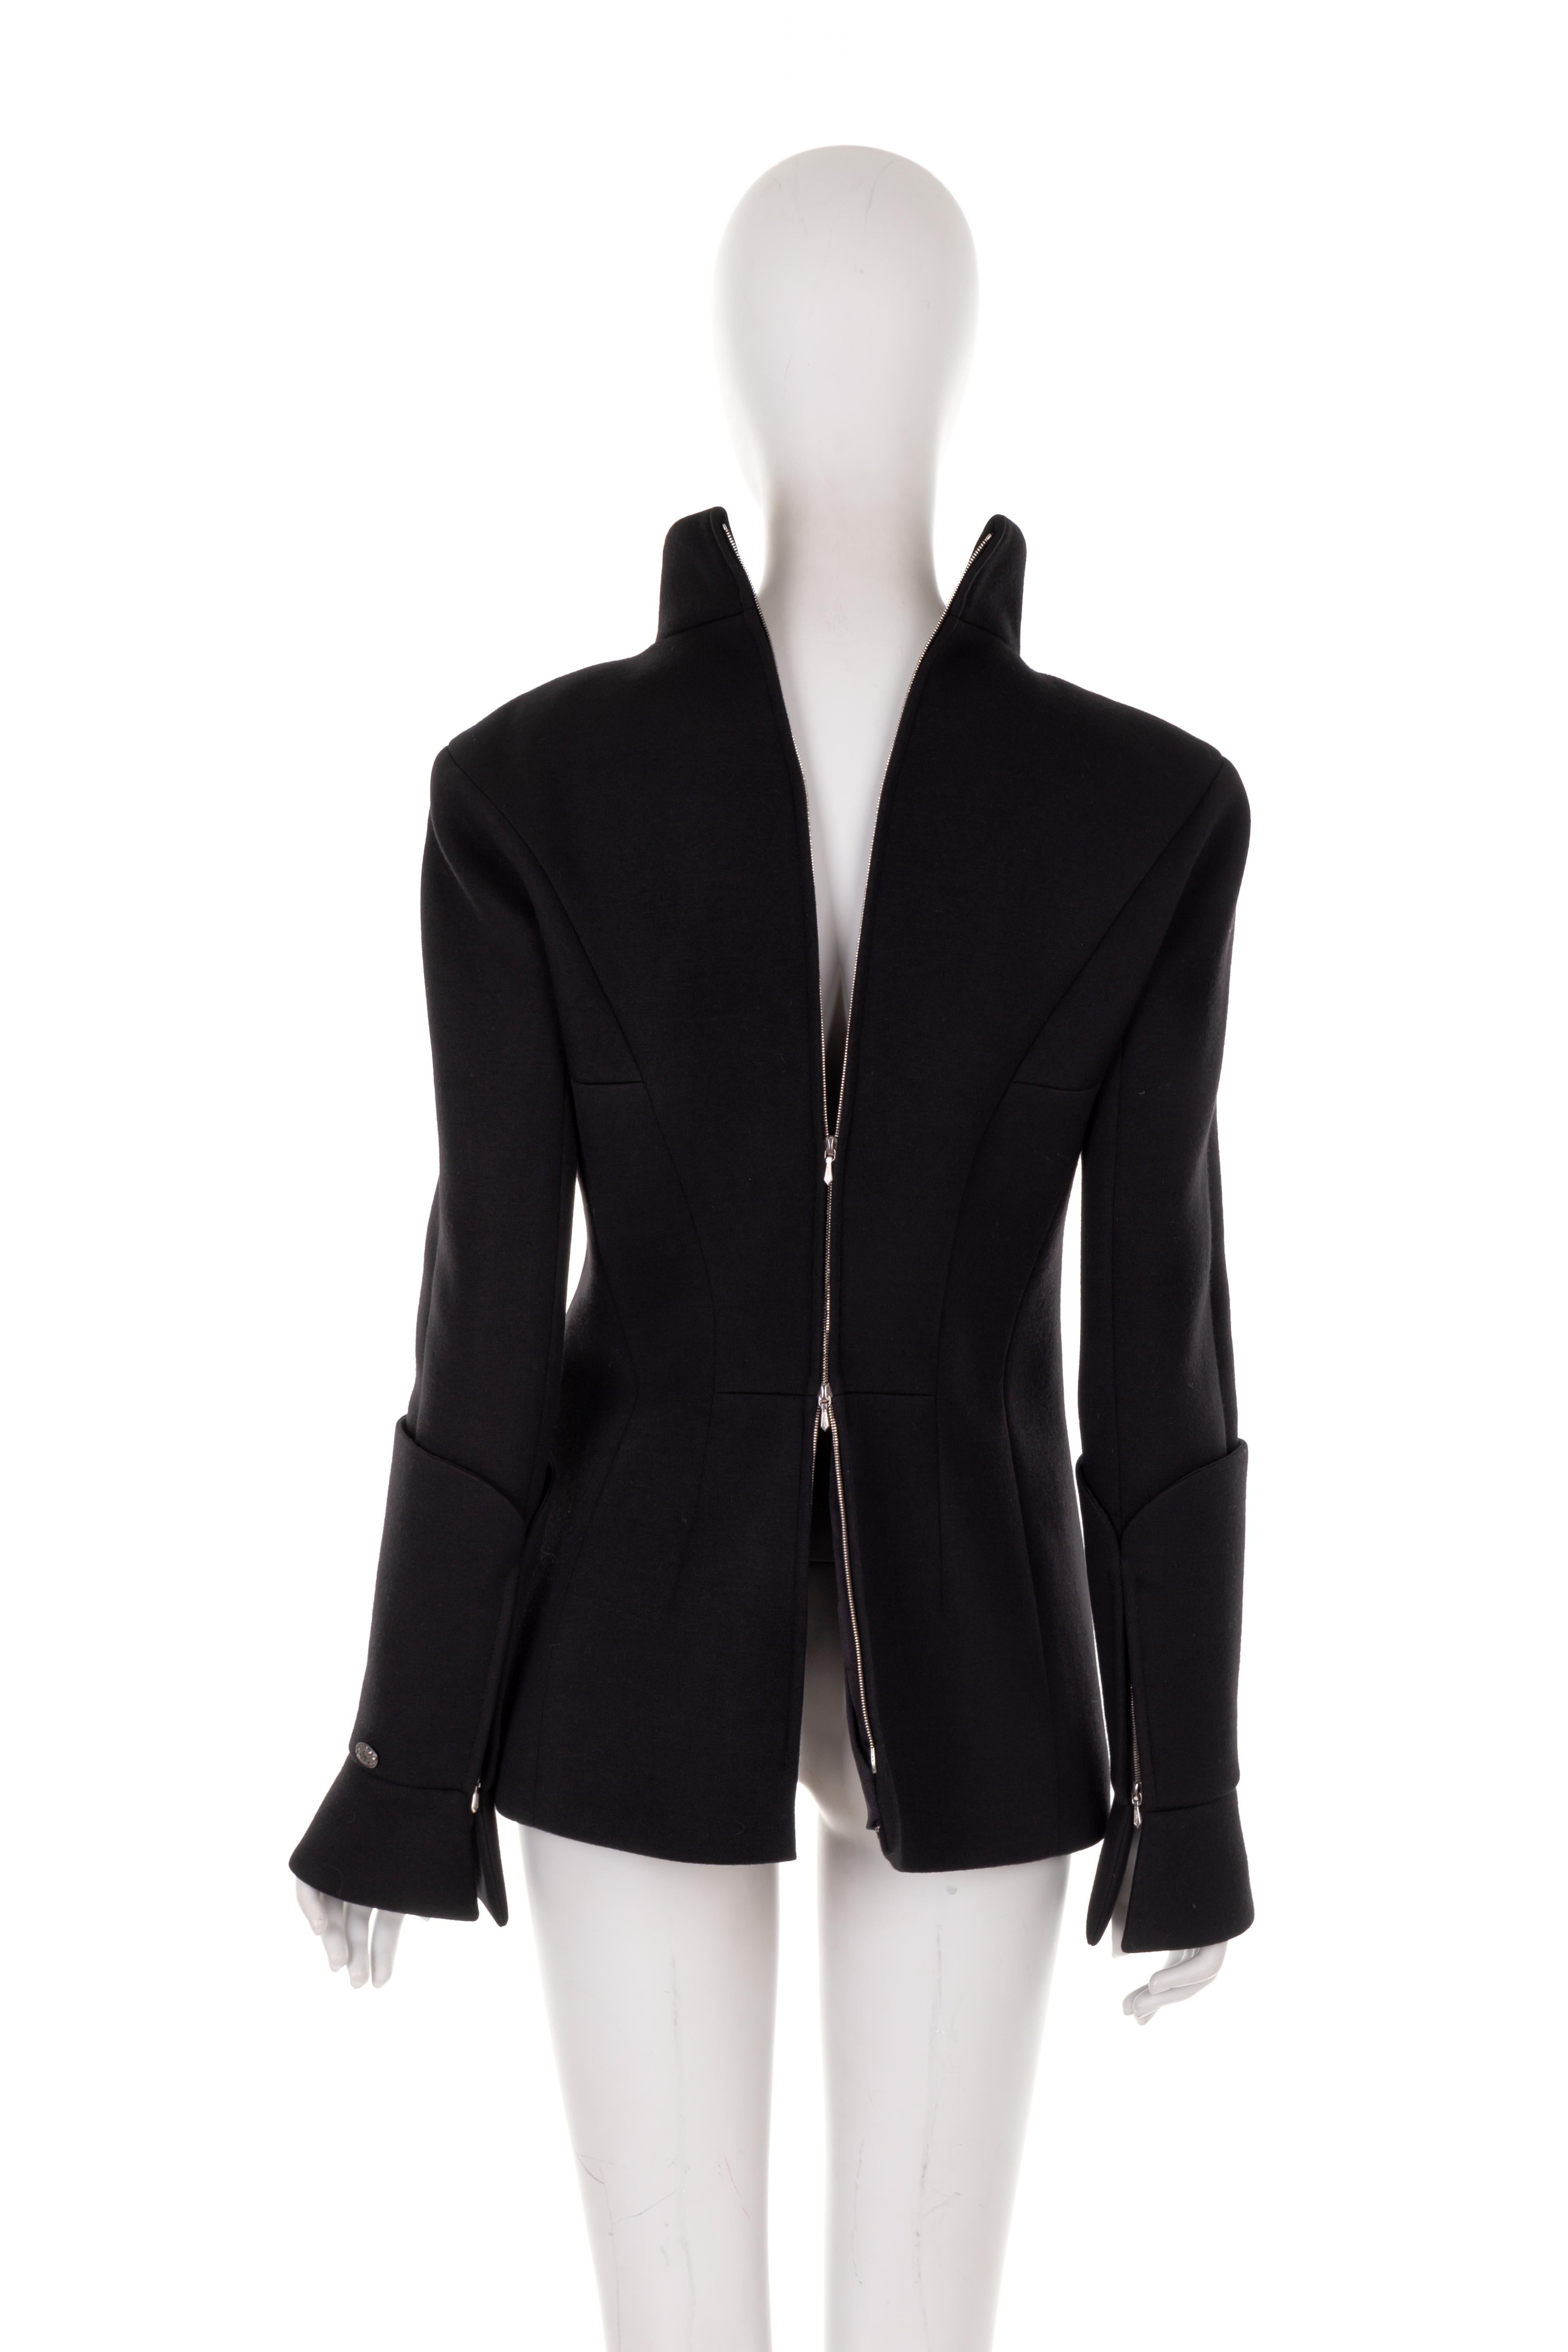 Women's Chanel by Karl Lagerfeld F/W 2009 black wool/nylon paneled jacket For Sale